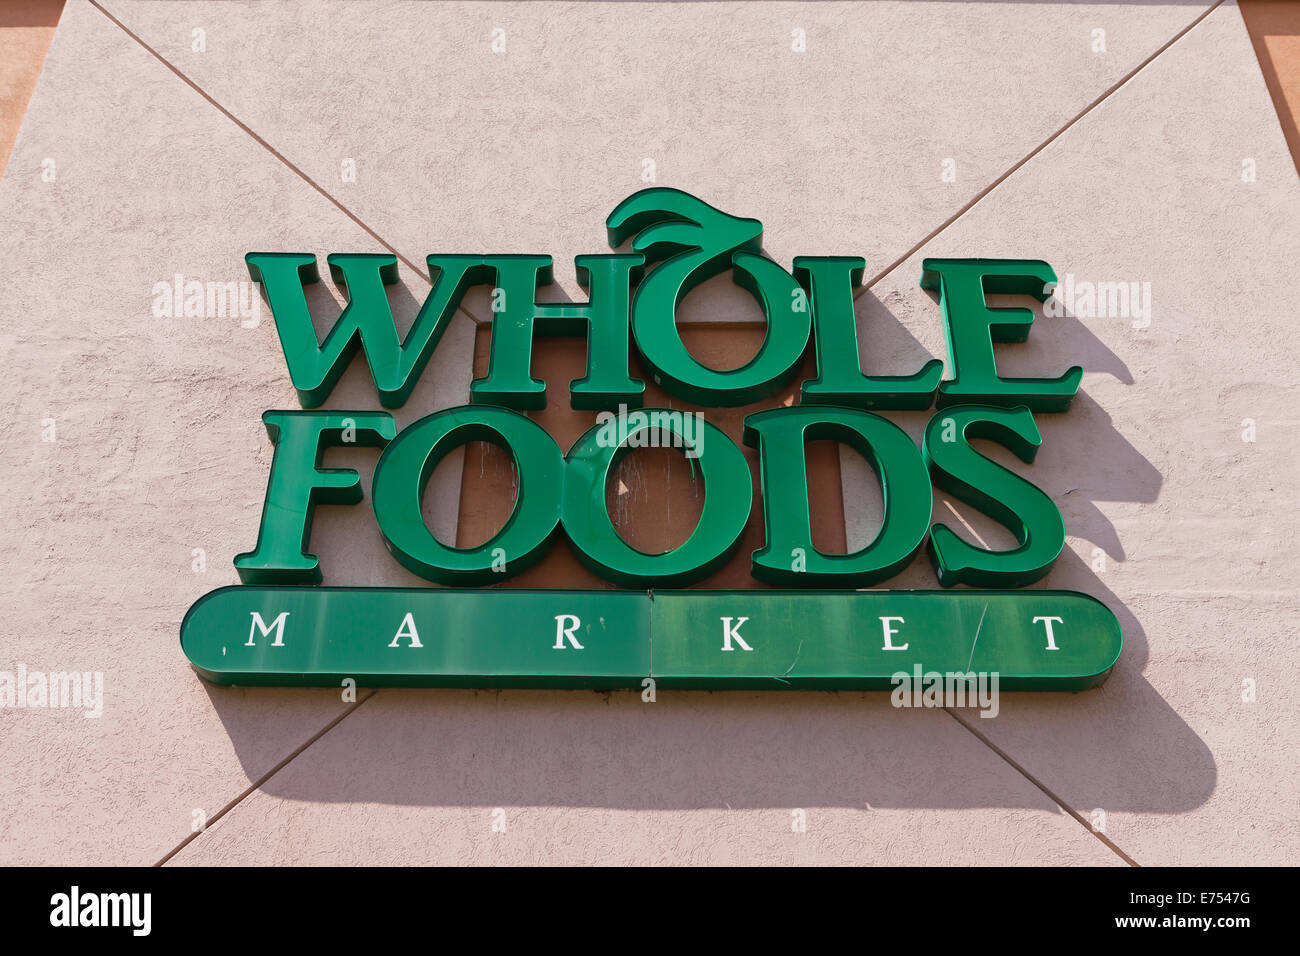 Supermarché Whole Foods sign - Washington, DC USA Banque D'Images